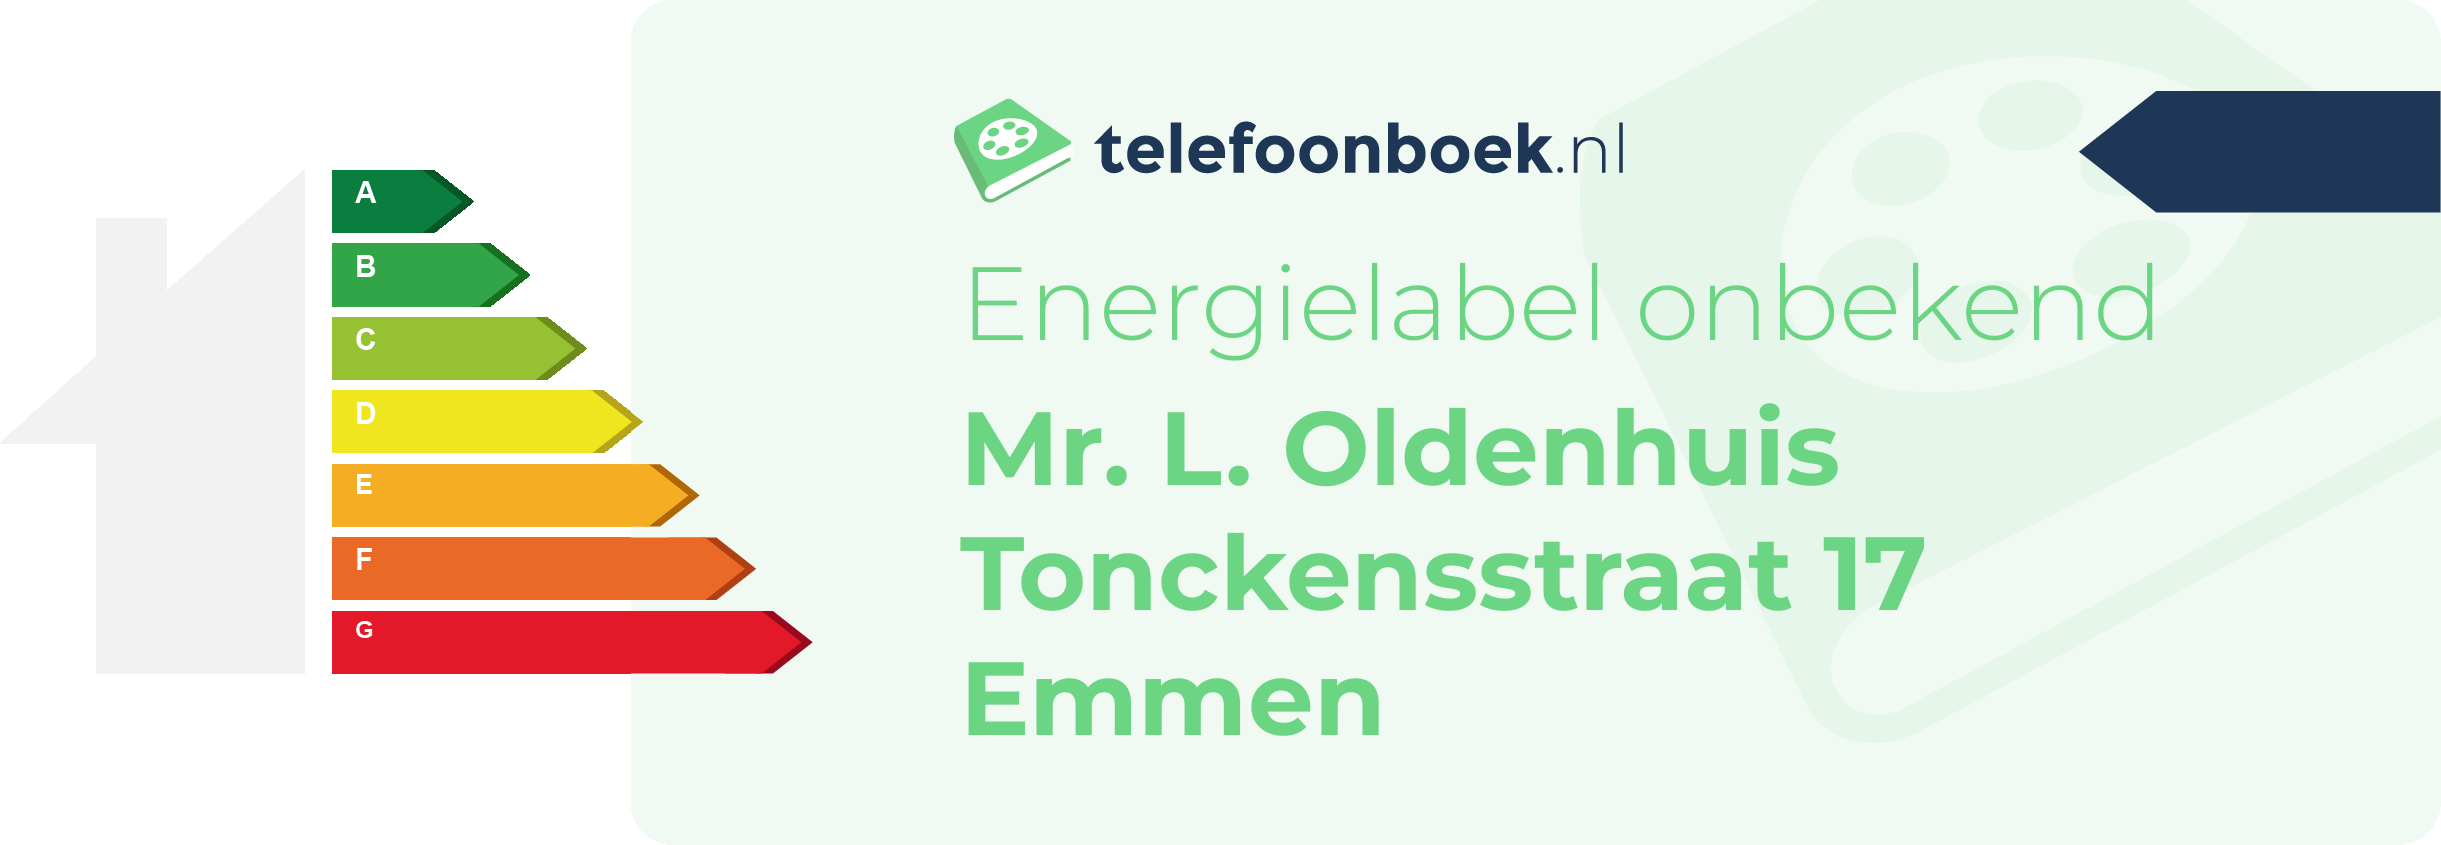 Energielabel Mr. L. Oldenhuis Tonckensstraat 17 Emmen